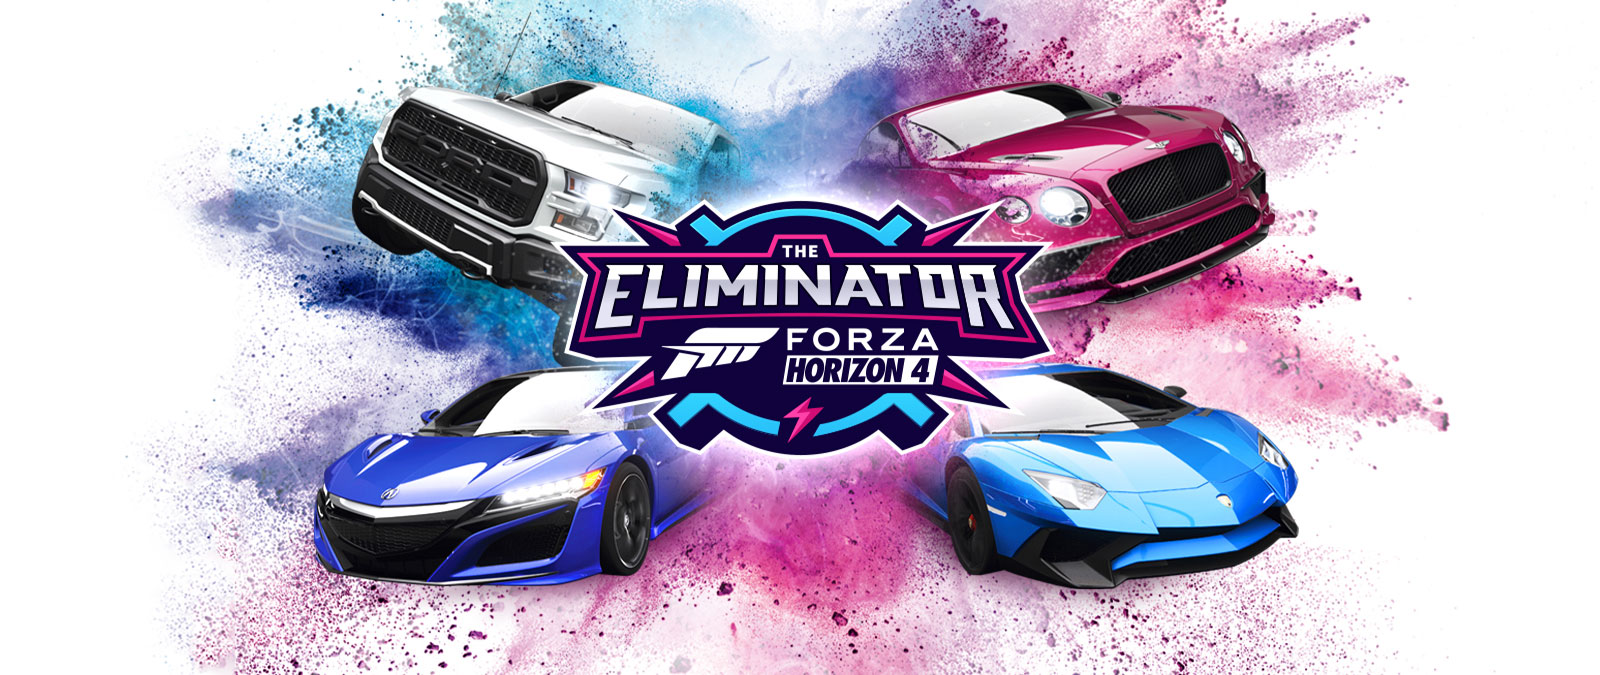 Eliminator, logo Forza Horizon 4, čtyři auta a kolem nich modrý a růžový prášek